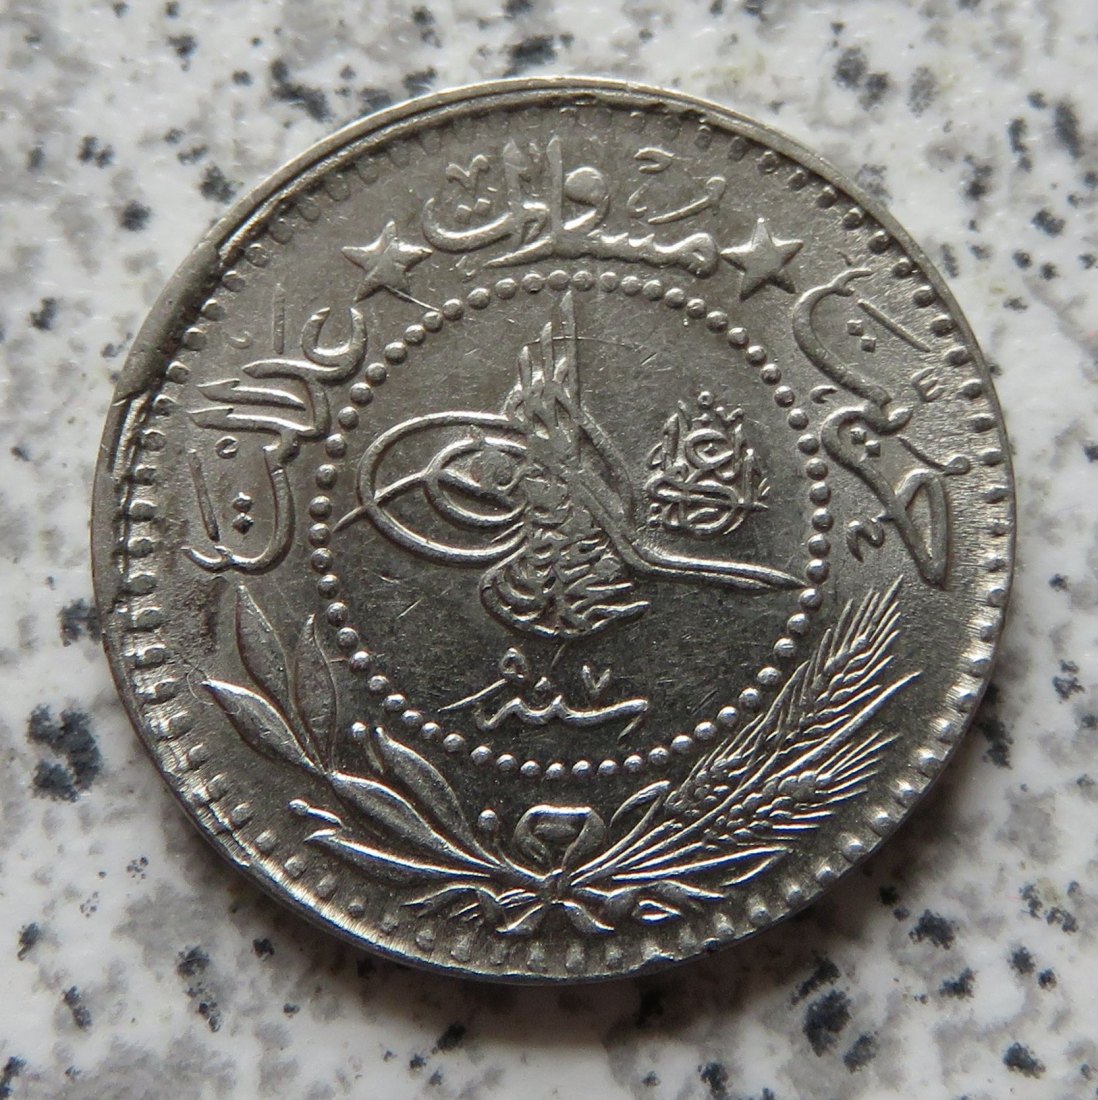  Türkei 10 Para 1327/7 (1915), KM 768   